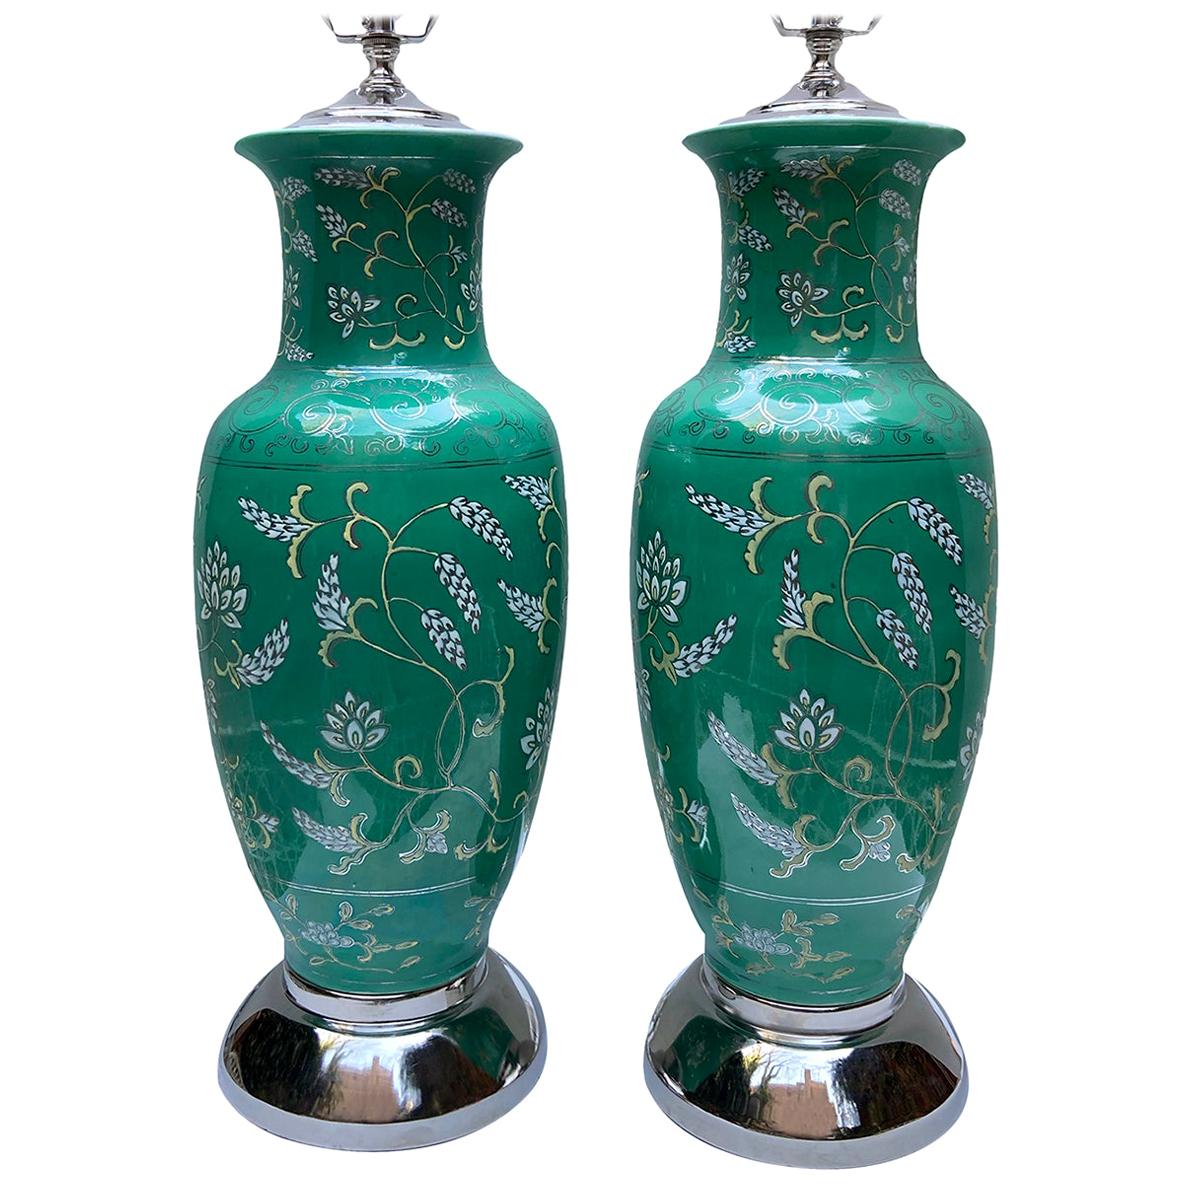 Pair of Green Italian Porcelain Lamps